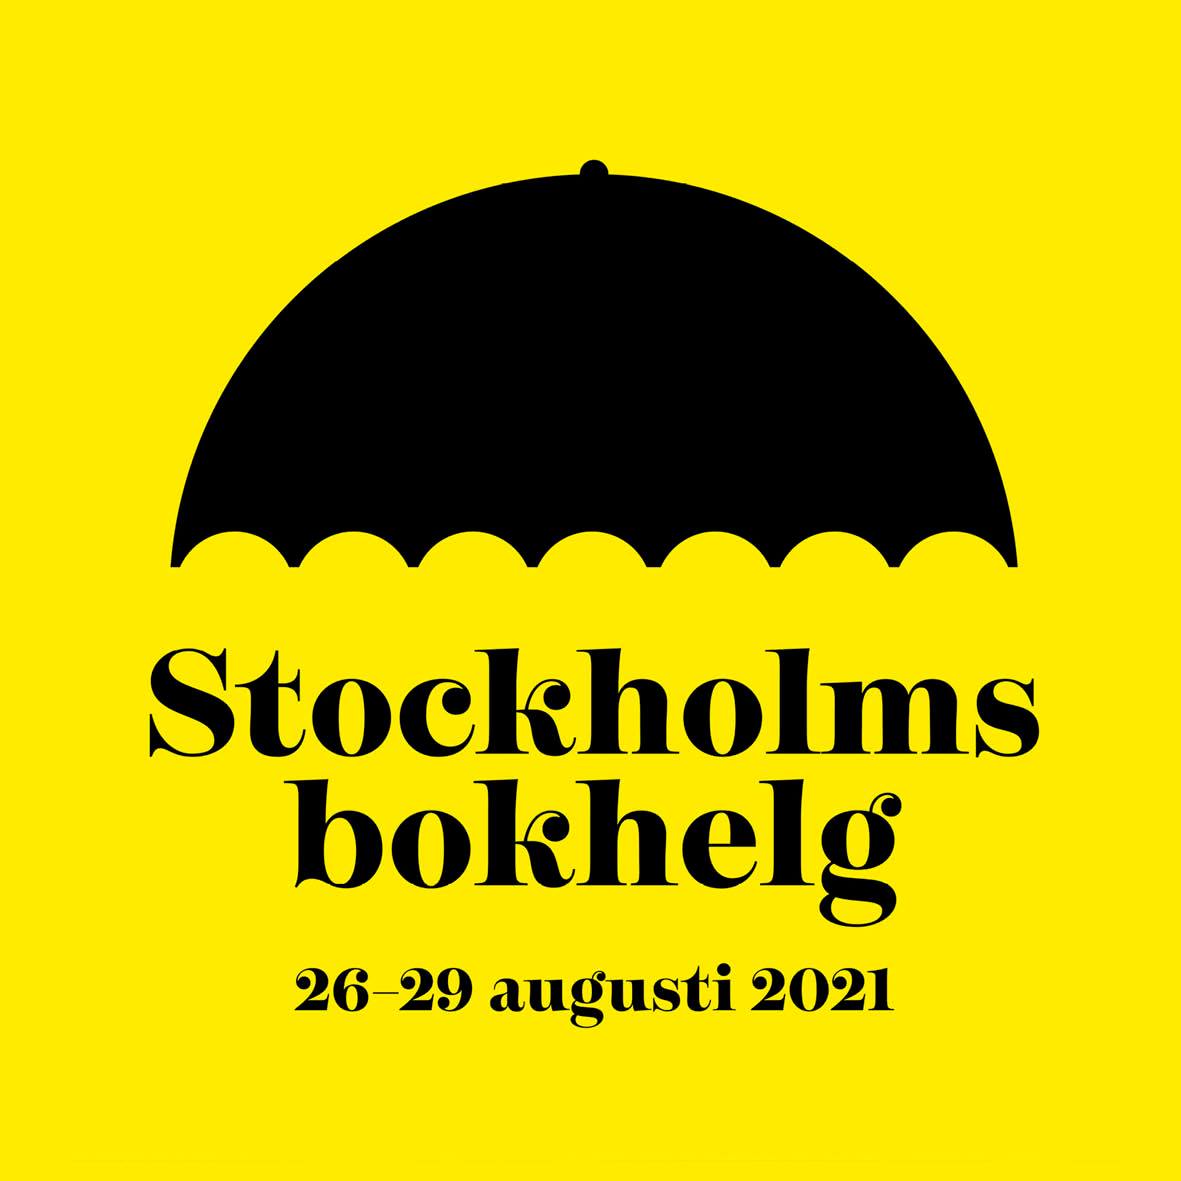 Stockholms bokhelg